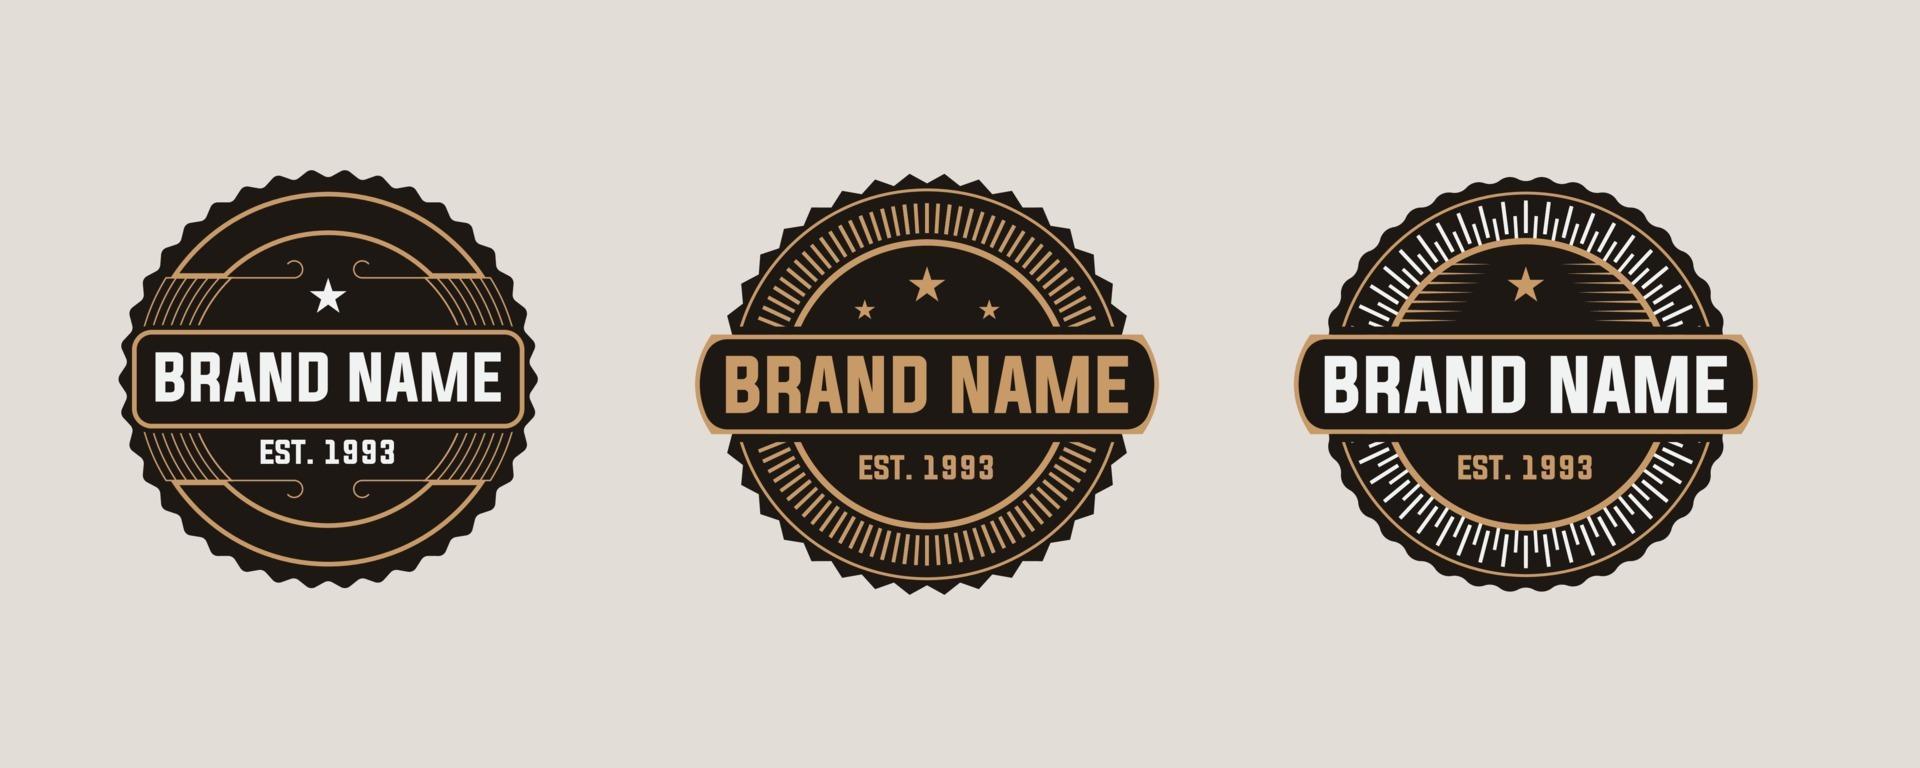 nombre de la marca establece insignias de logotipo vintage. Elegante emblema de etiqueta retro inspiración para el diseño del logotipo. vector